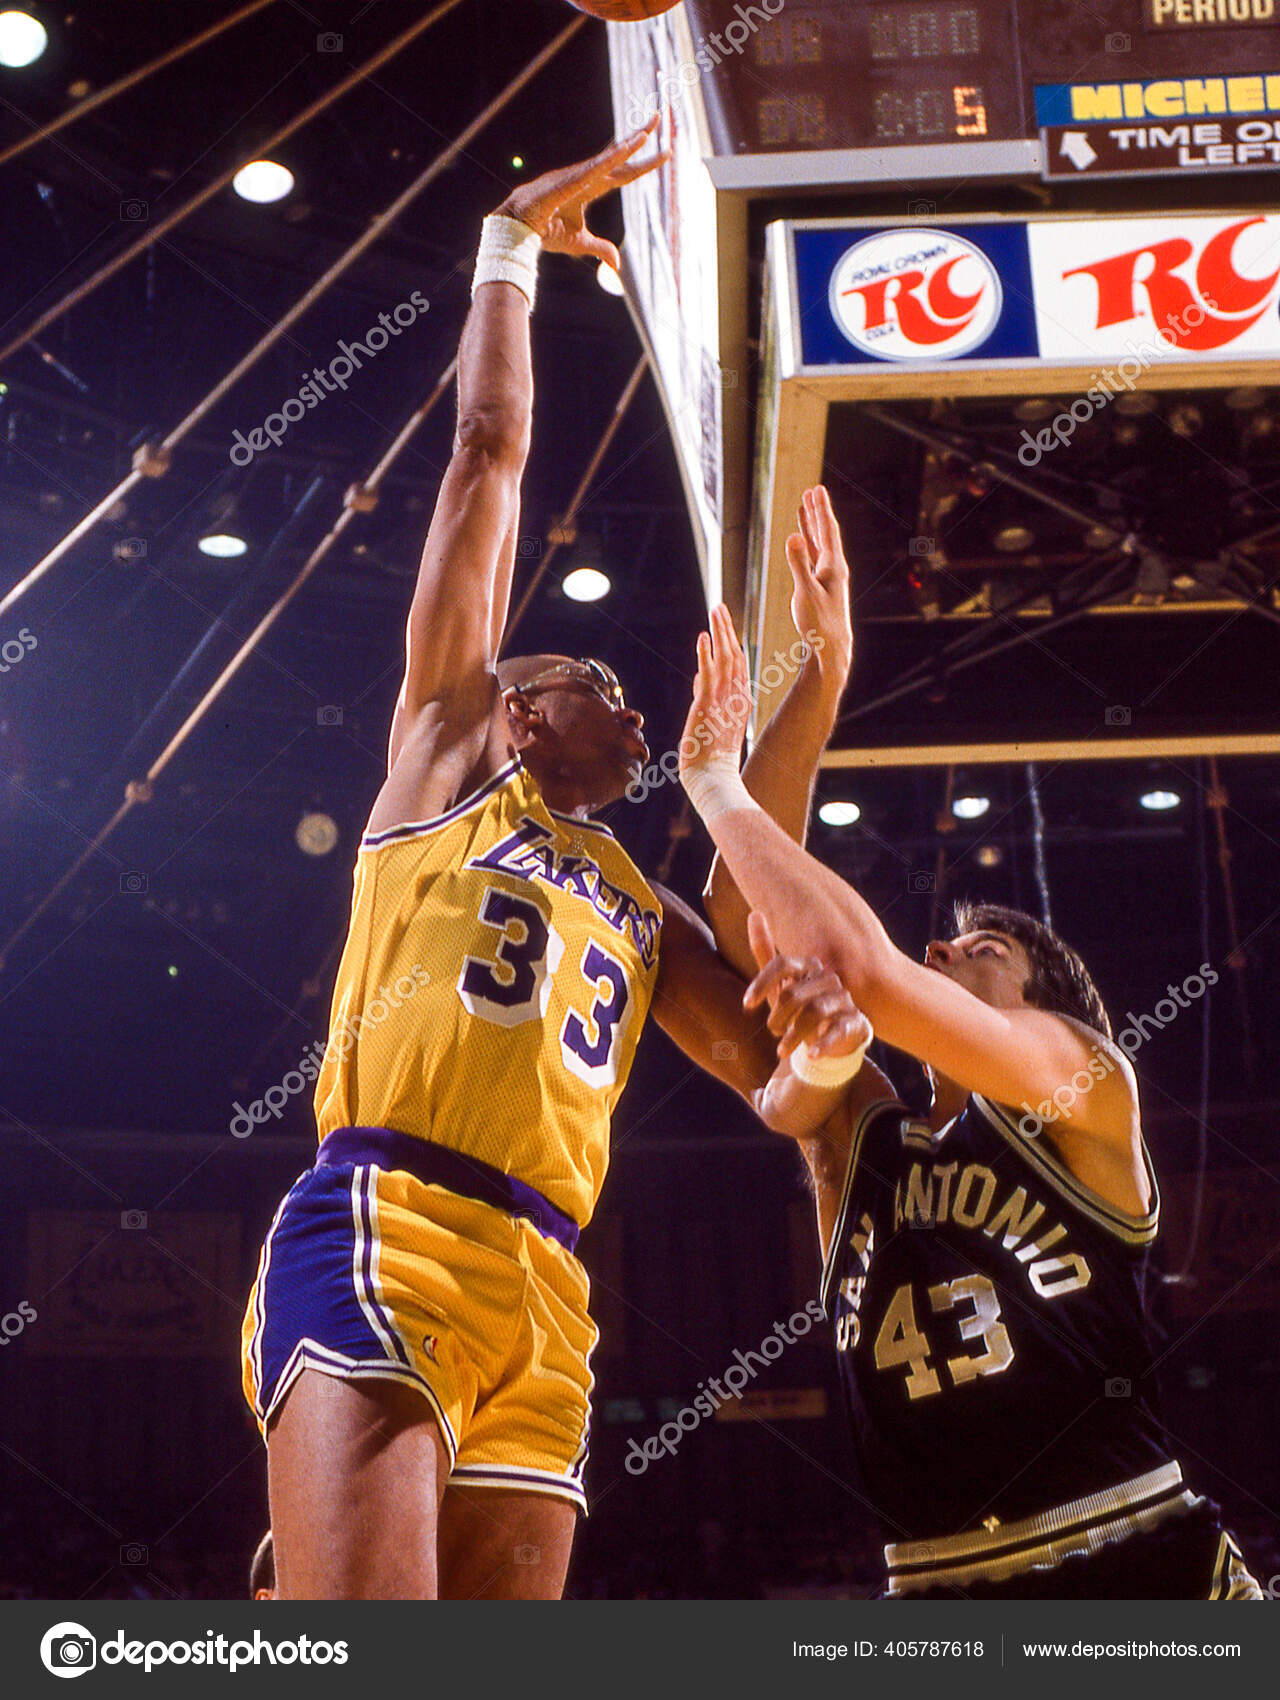 Download Lakers Player Kareem Abdul-Jabbar Magic Johnson Wallpaper